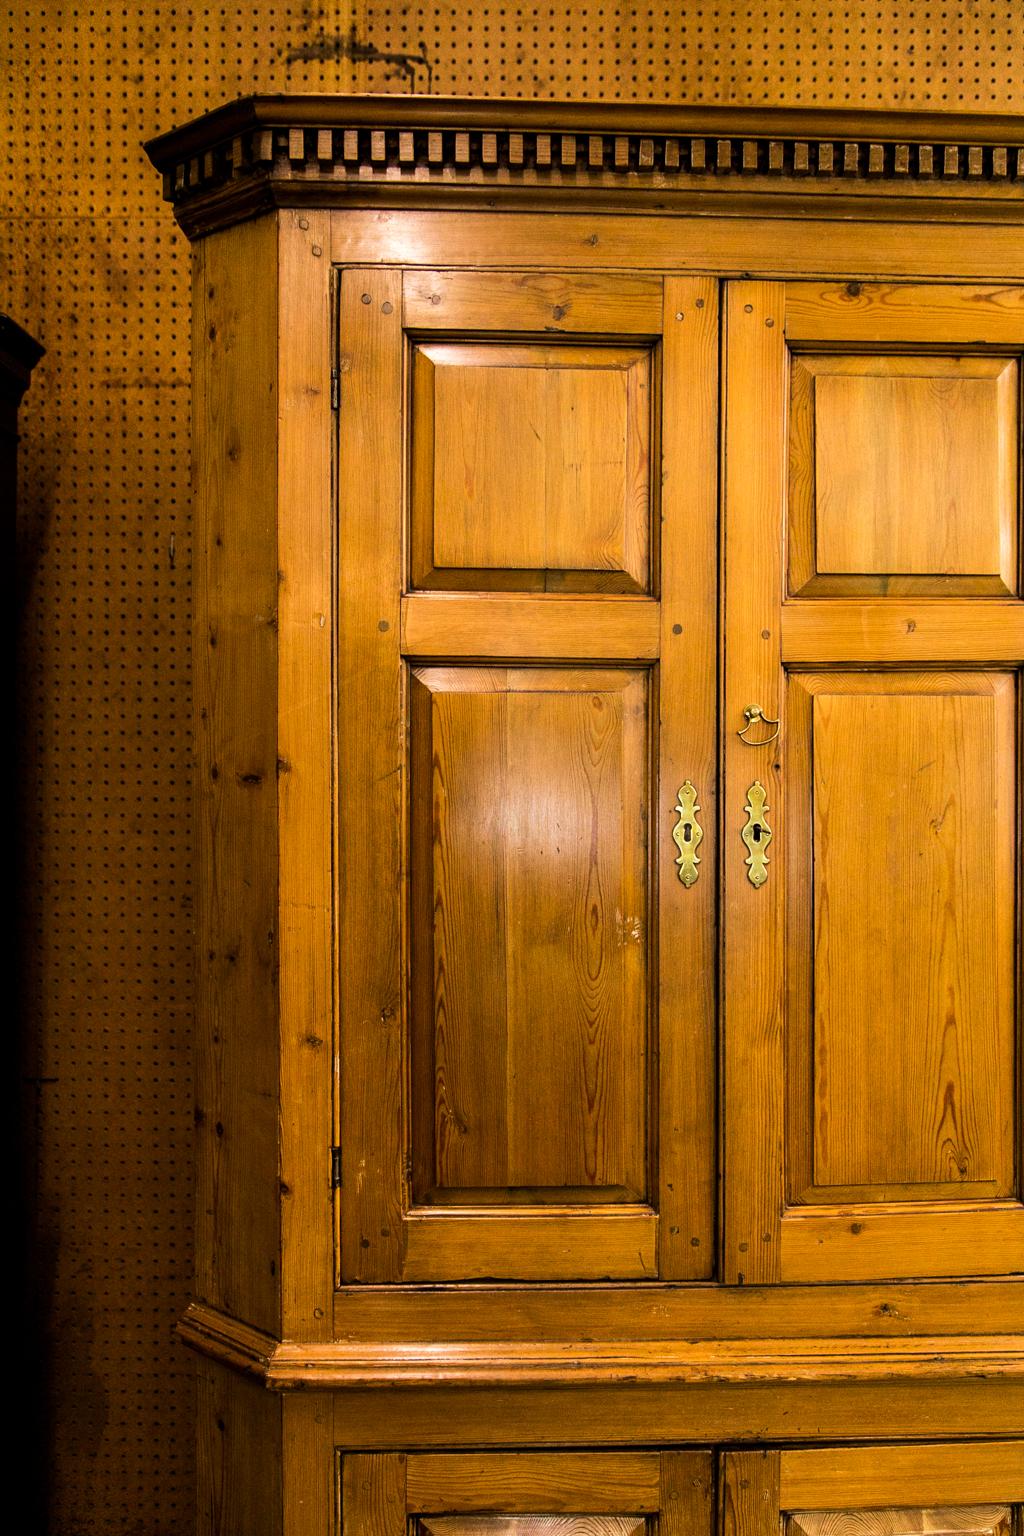 Der Eckschrank aus englischem Kiefernholz hat eine freiliegende Doppelzapfenkonstruktion mit erhabenen, geformten Paneelen in der Tür, und das tiefe, gezackte Gesims hat spitz zulaufende Formteile. Die Innenplatte ist mit einer gewölbten Oberseite